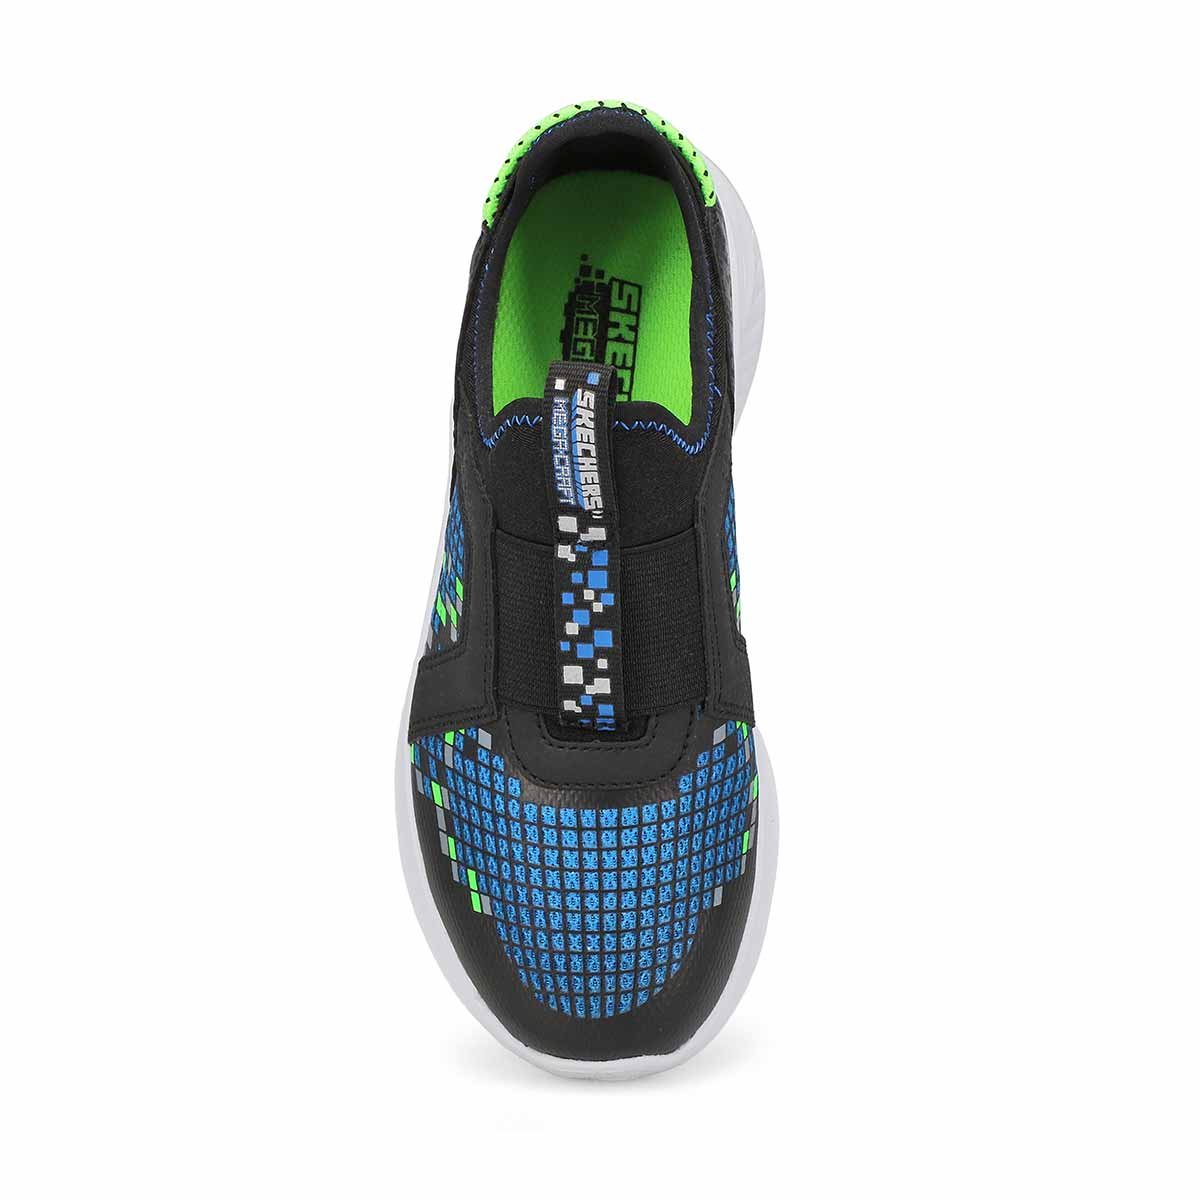 Boys Ultra Flex 3.0 Slip On Sneaker - Black/Blue/Lime